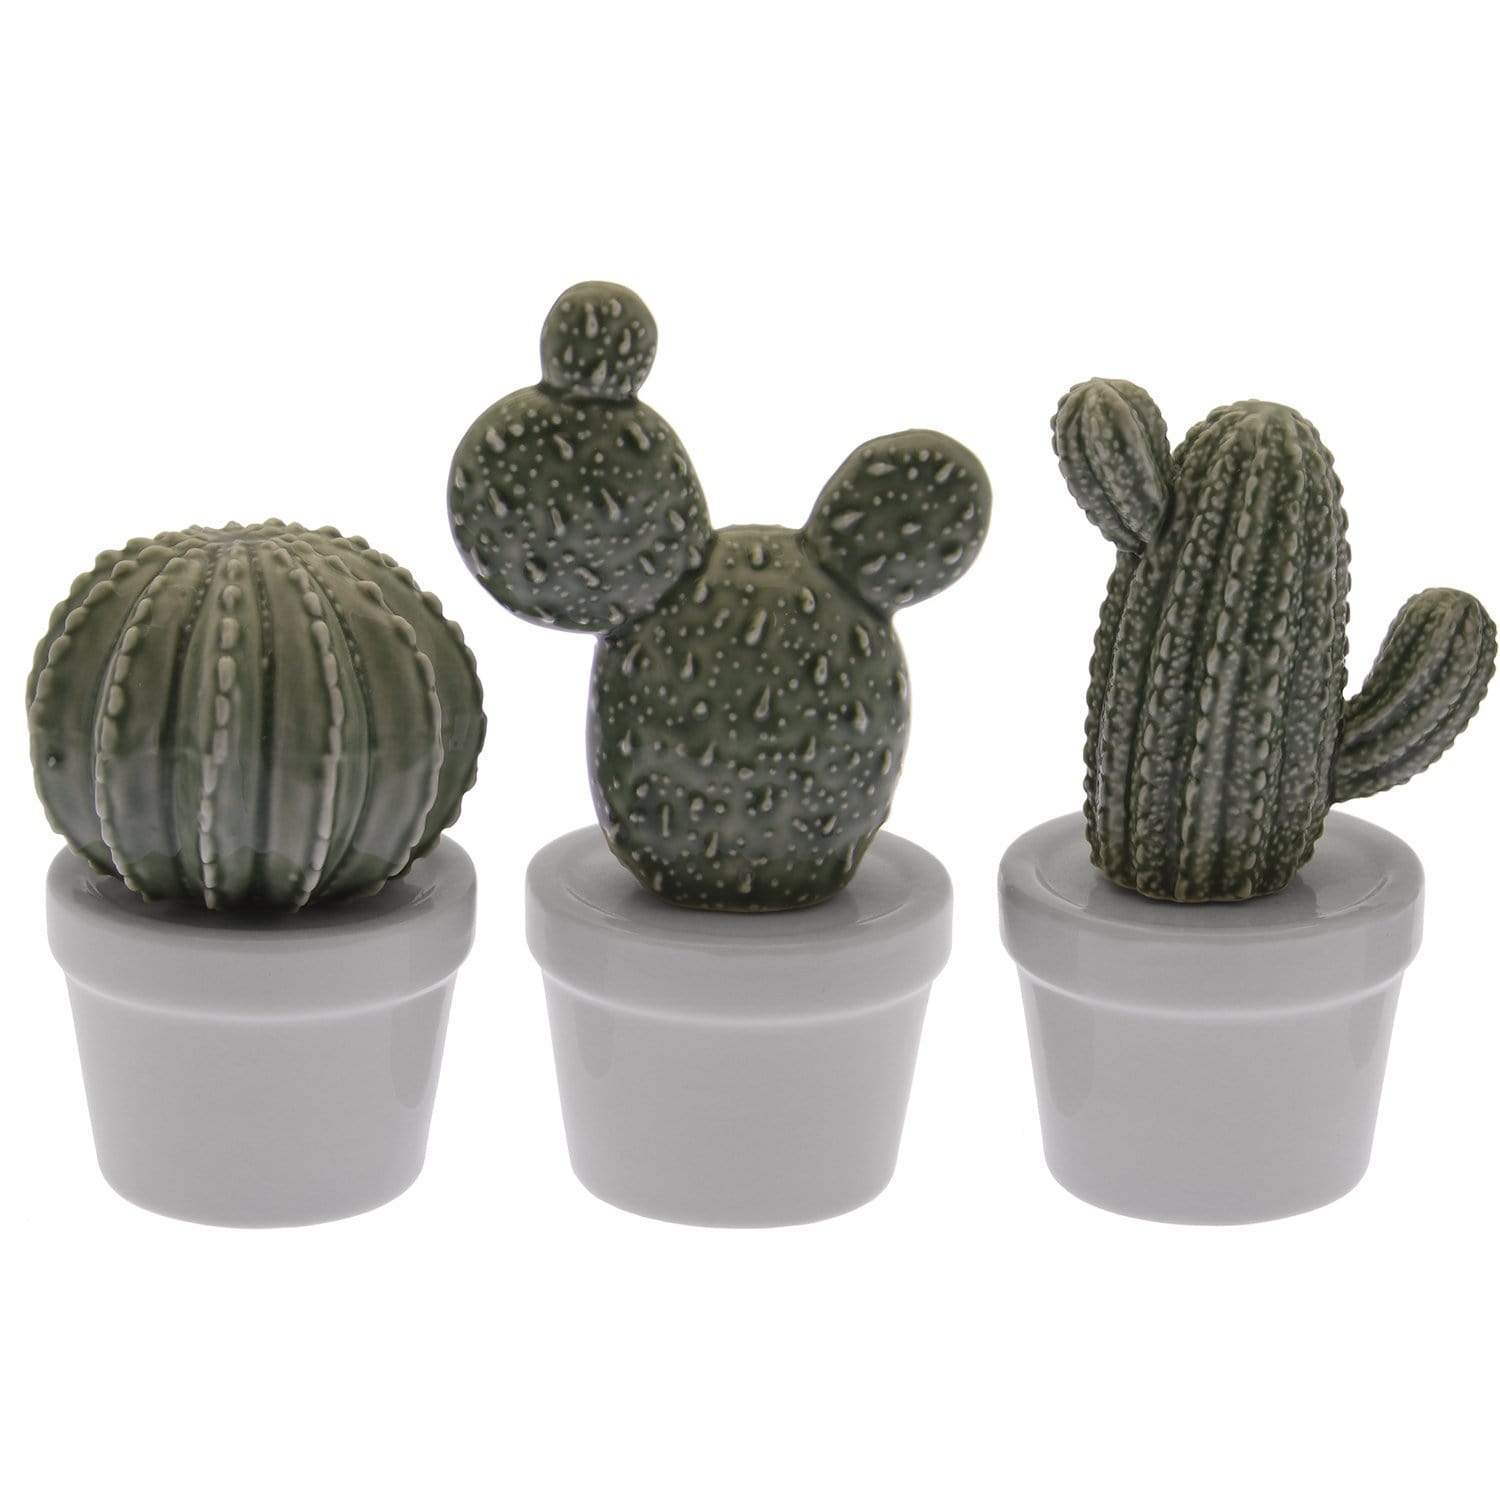 MESSICO Cactus in Ceramica con Vasetto Fantasie Assortite 7x6x11,5- 7,5x6x13 - 6x6x9 cm - Dolci pensieri gift